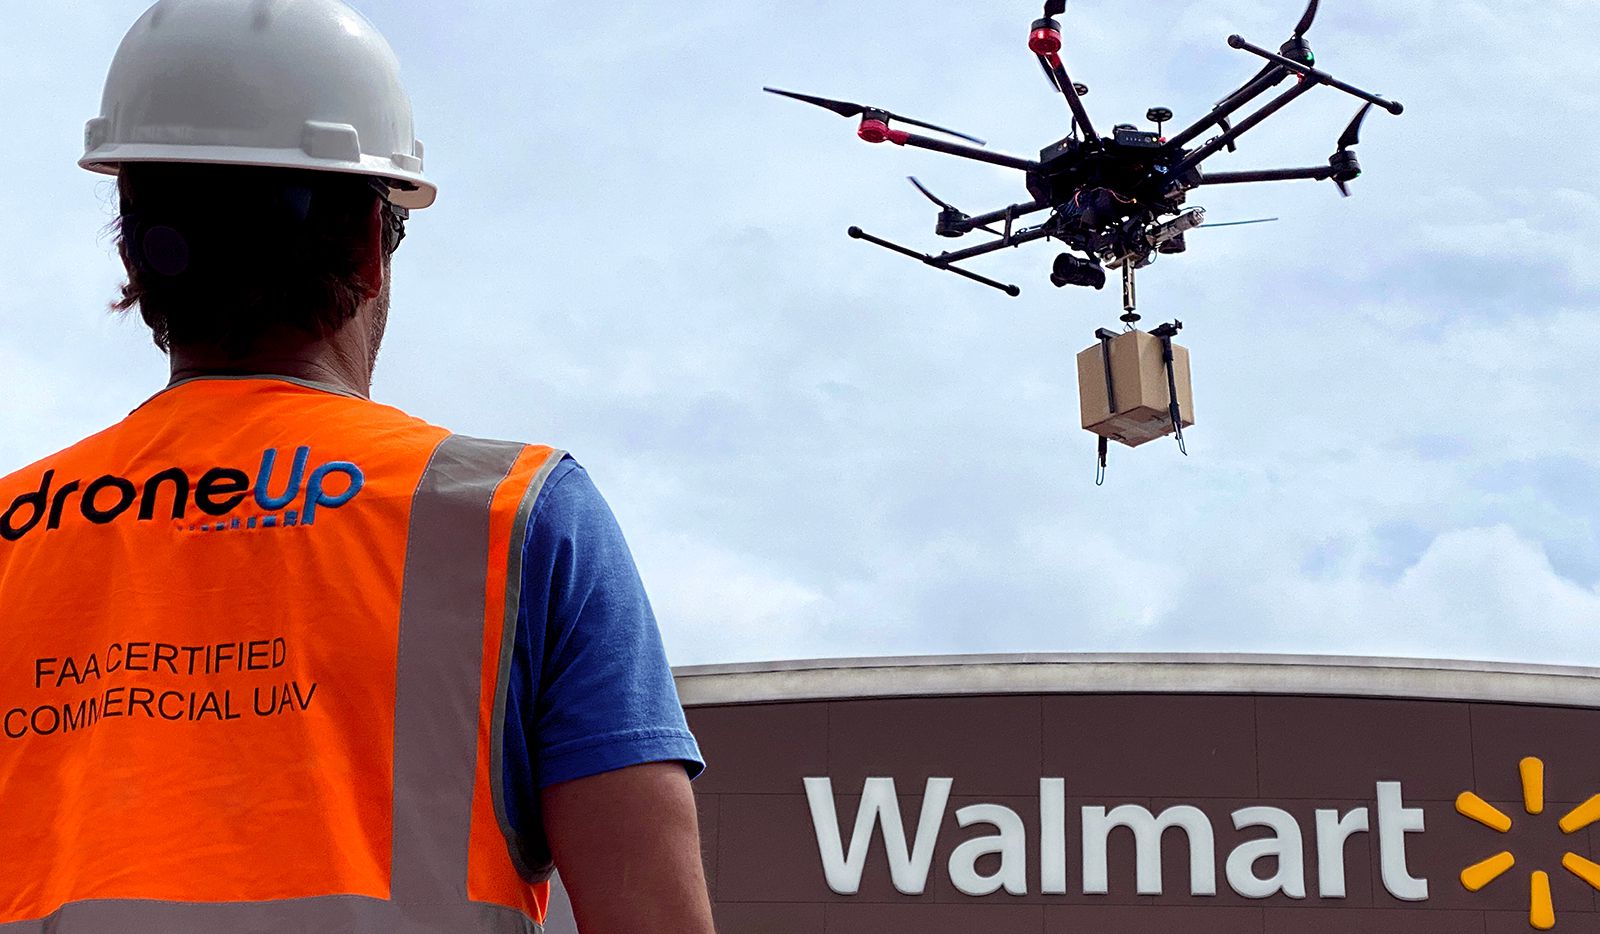 Walmart étend le service de livraison de drones à six États et 4 millions de foyers